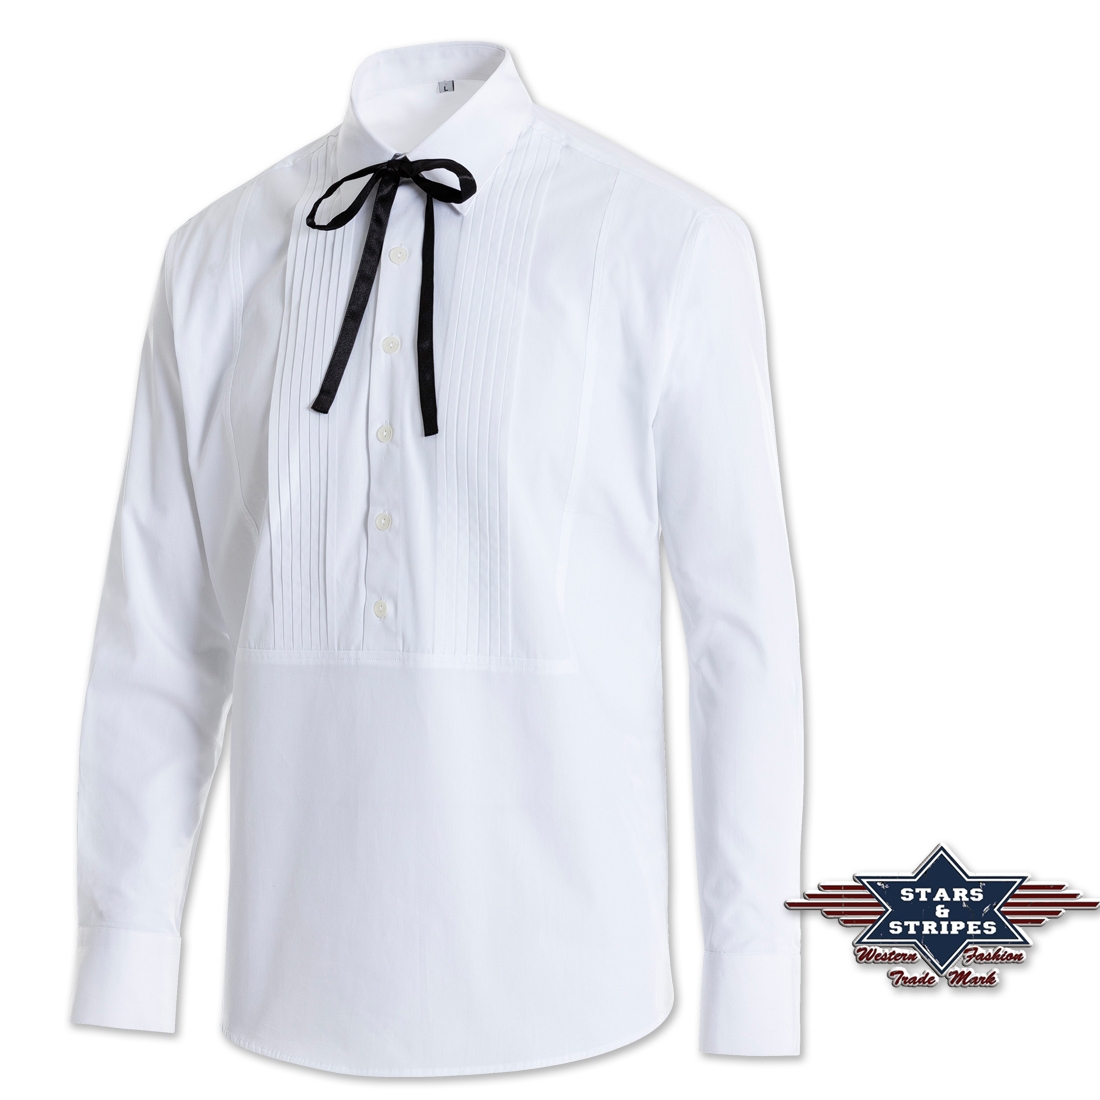 Set: Westernhemd und zwei Westernschleifen von Stars & Stripes - Old Style - Joseph, Weiß